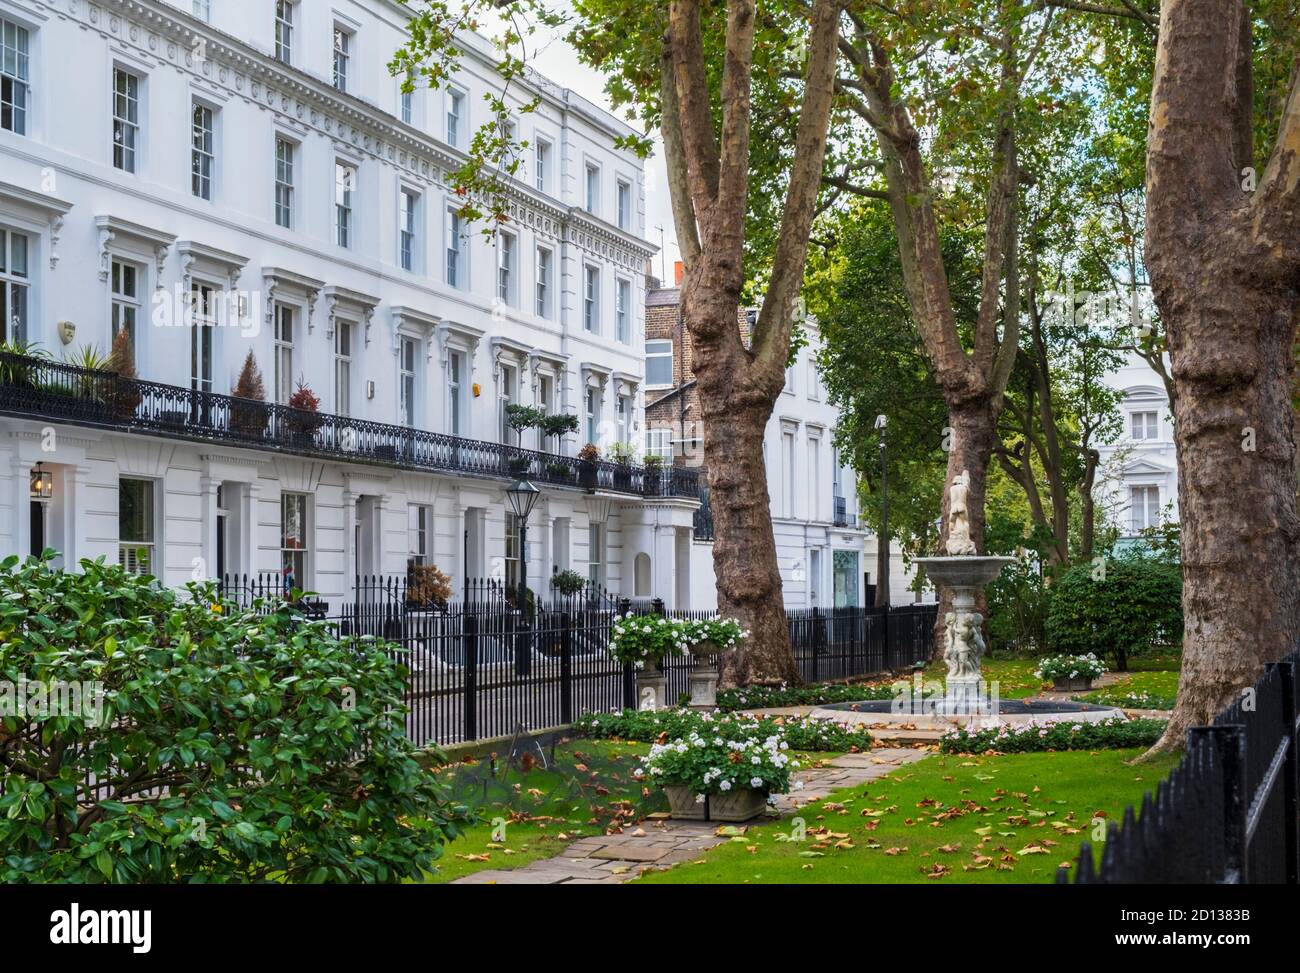 Immobiliare, Wellington Square, Chelsea, Londra, SW3 4NR, parco privato e giardino delle chiavi, No. 30 era la casa immaginaria di James Bond, case cittadine del XIX secolo Foto Stock